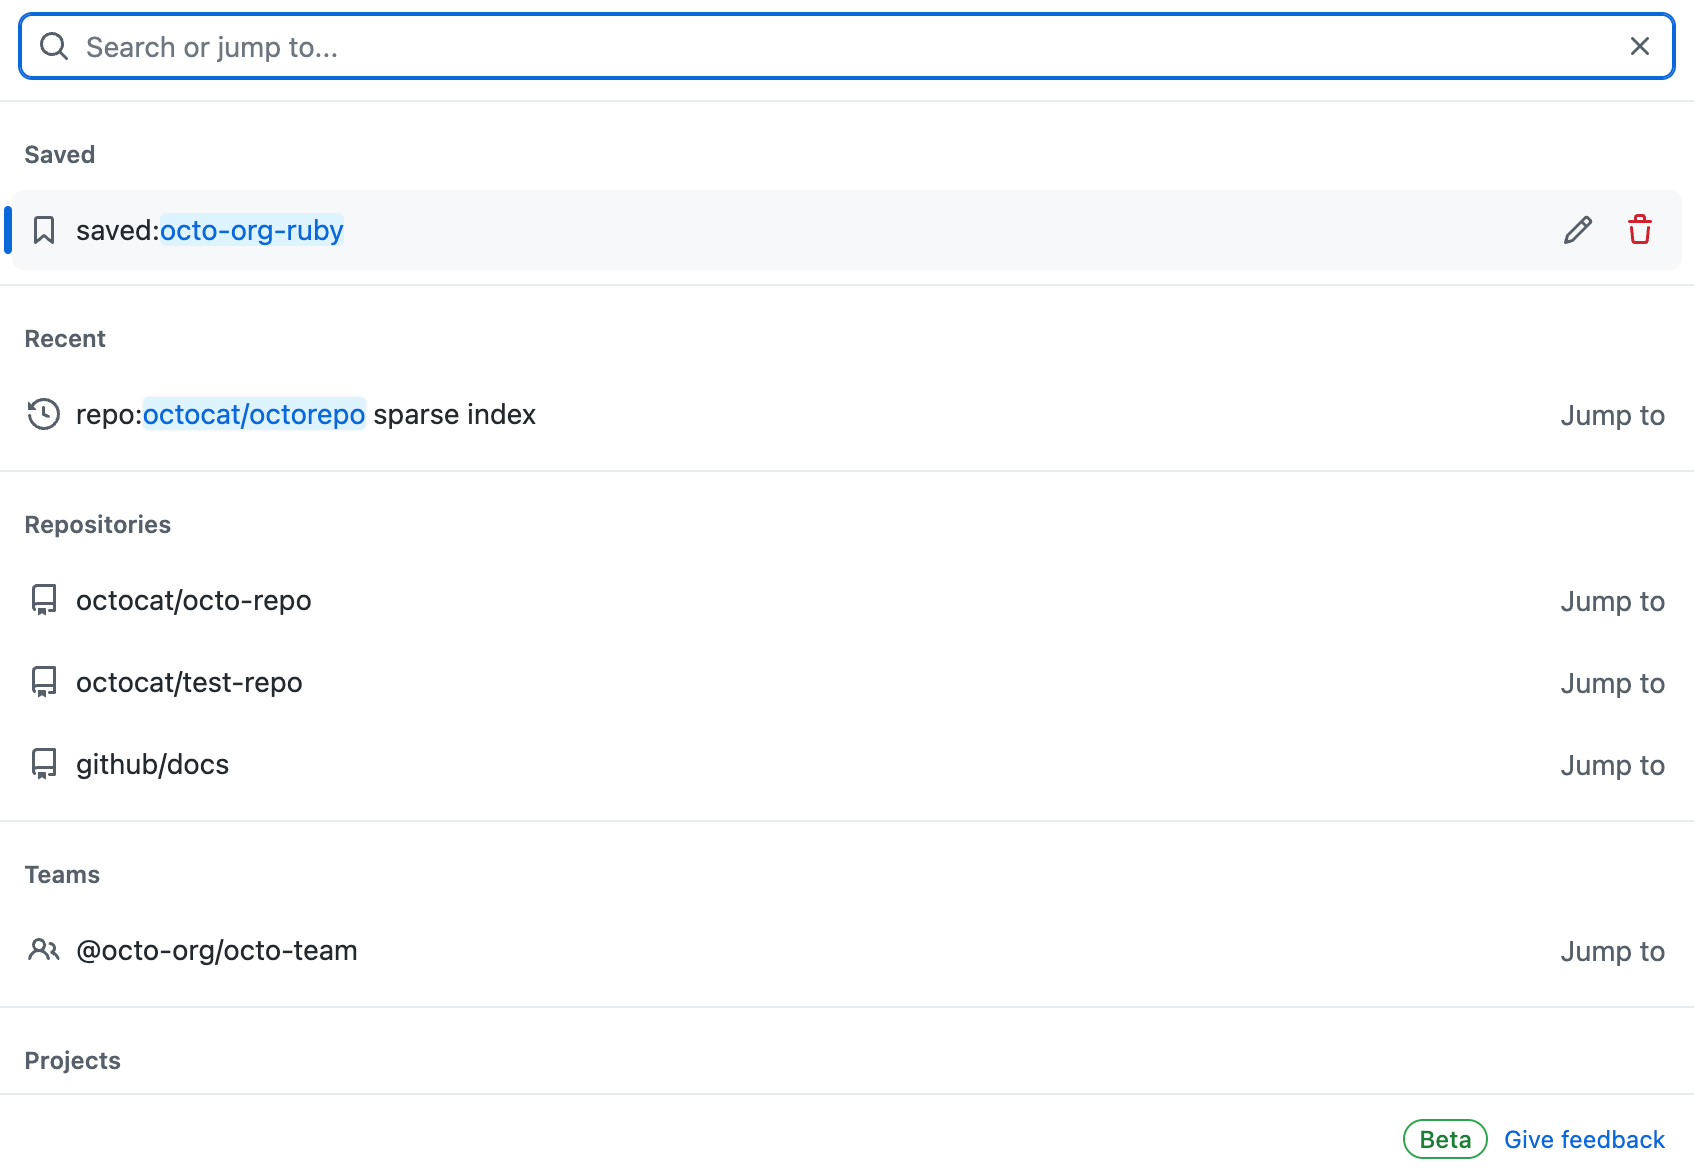 Captura de pantalla de la barra de navegación de GitHub. Hay una lista de sugerencias de búsqueda por categoría debajo de la barra de búsqueda.